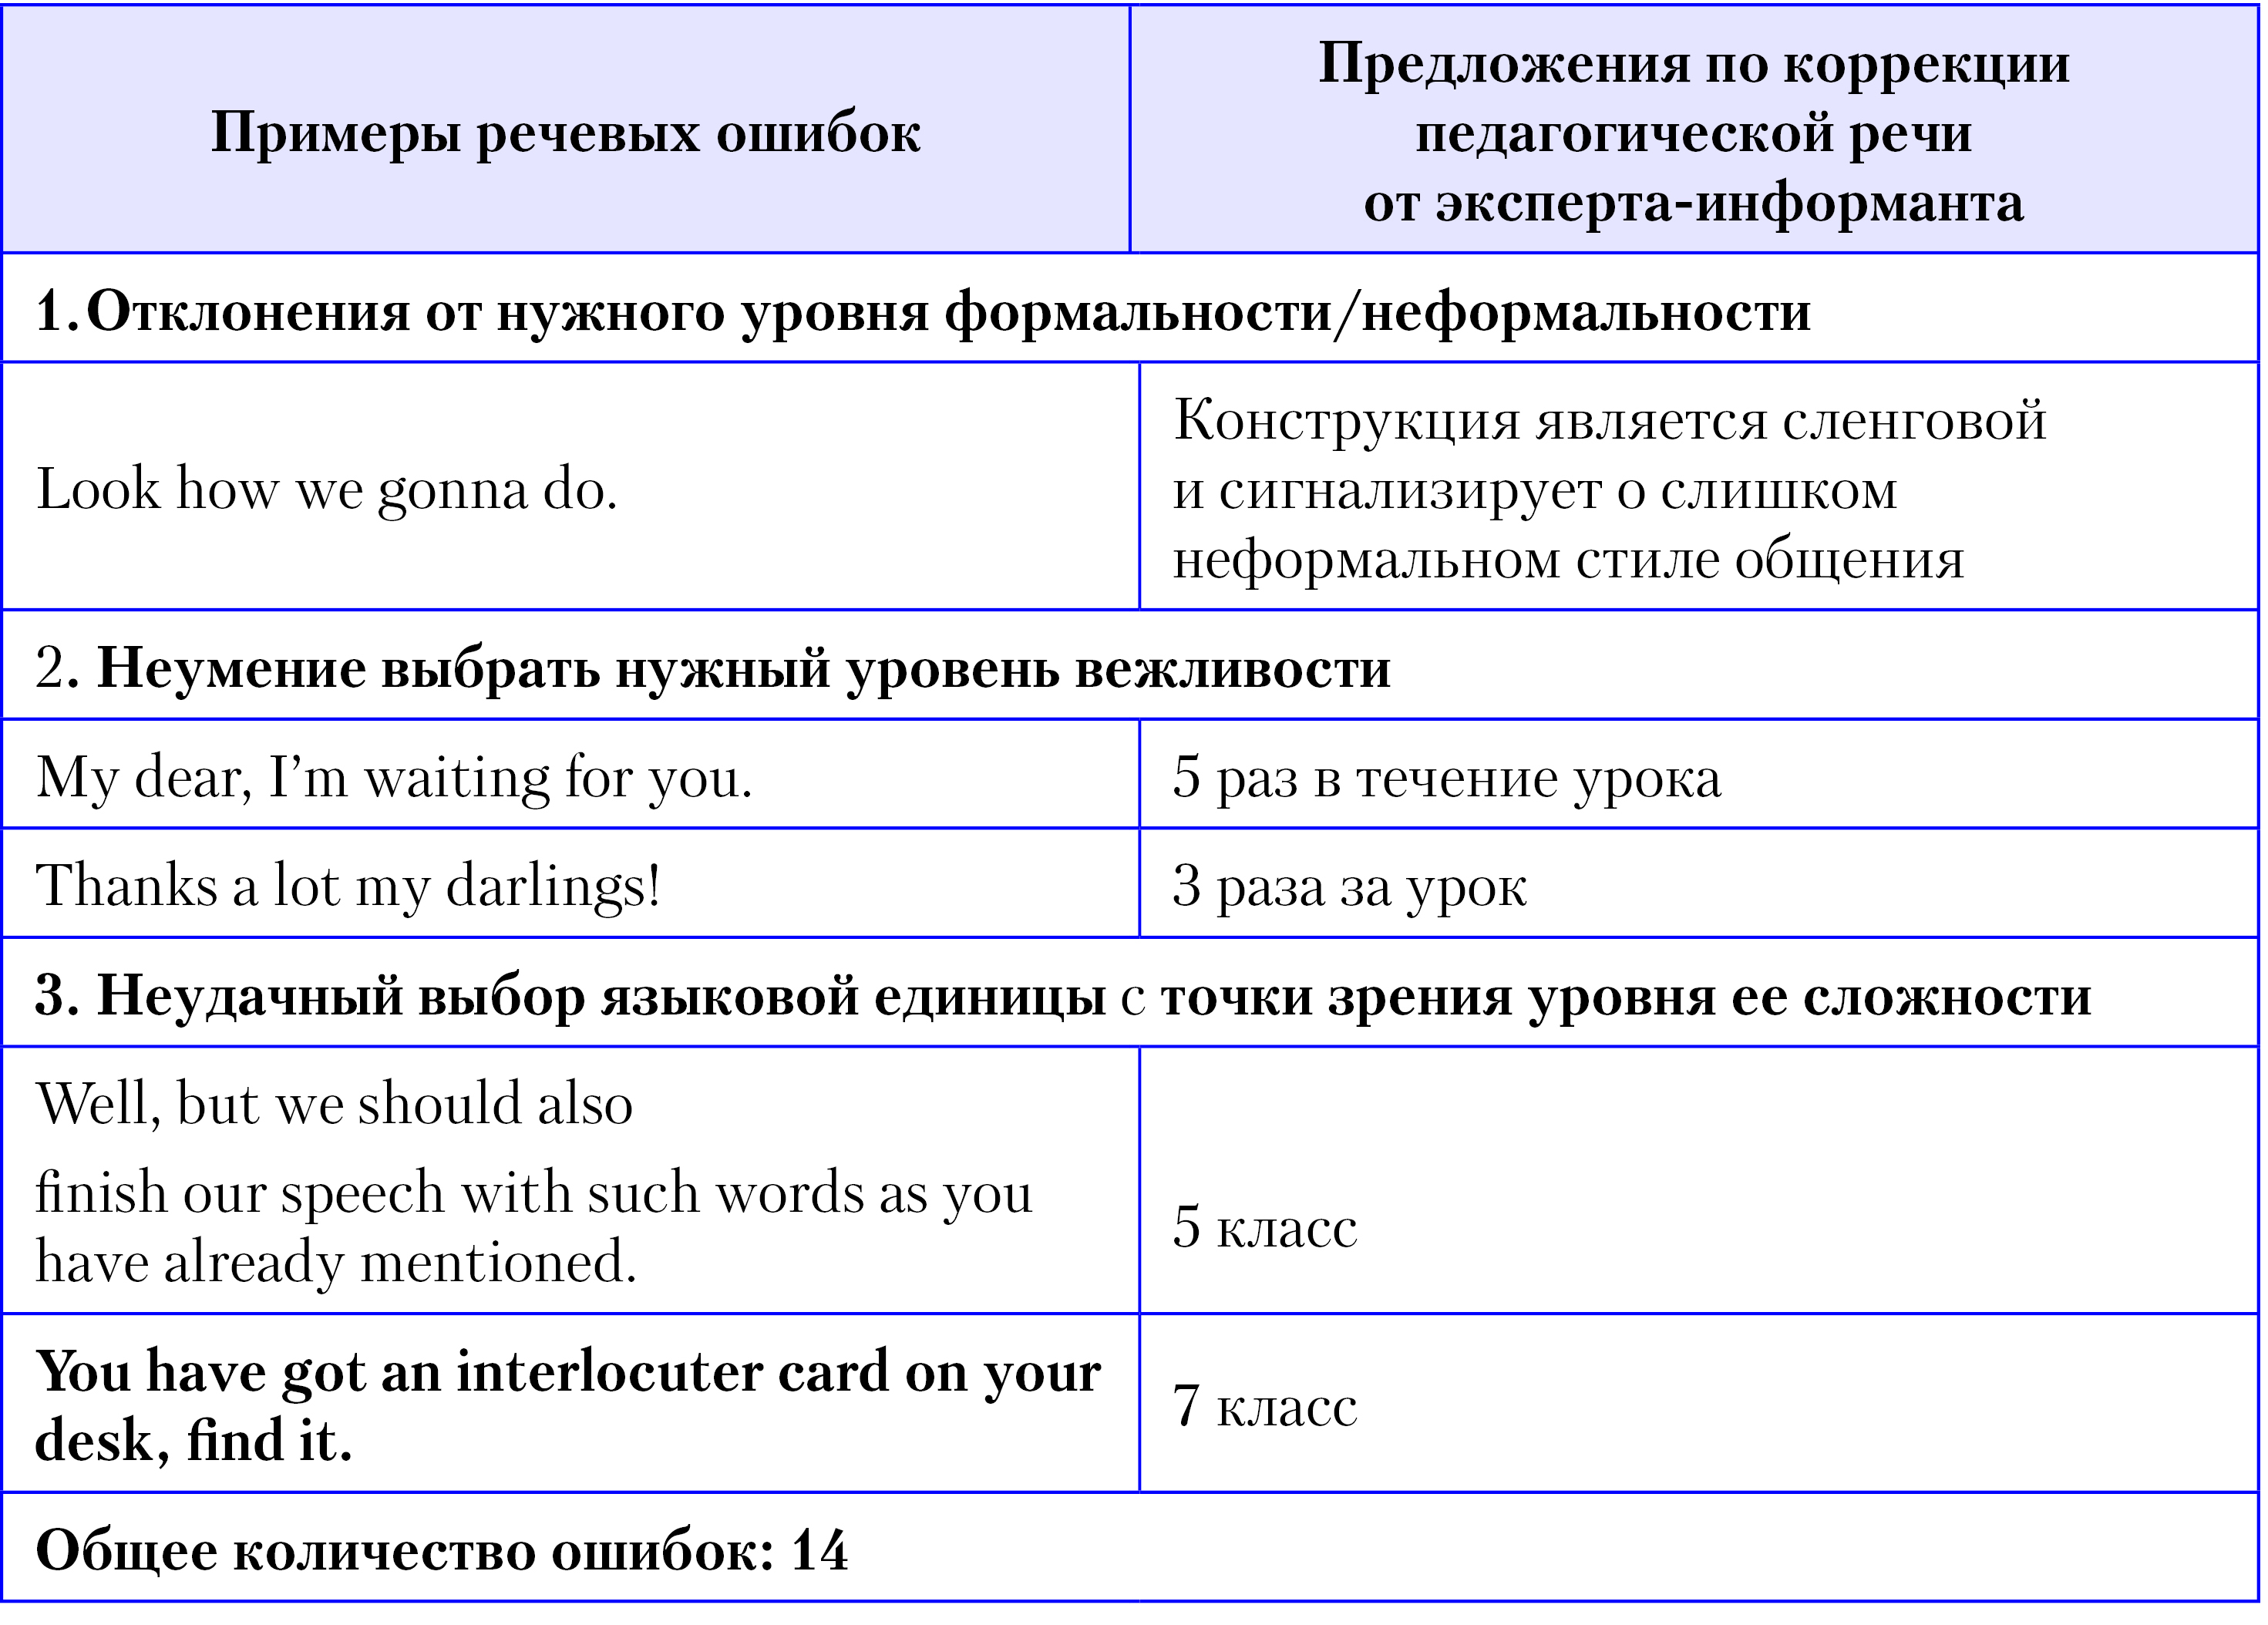 Типы и виды речевых ошибок в русском языке: примеры и исправления